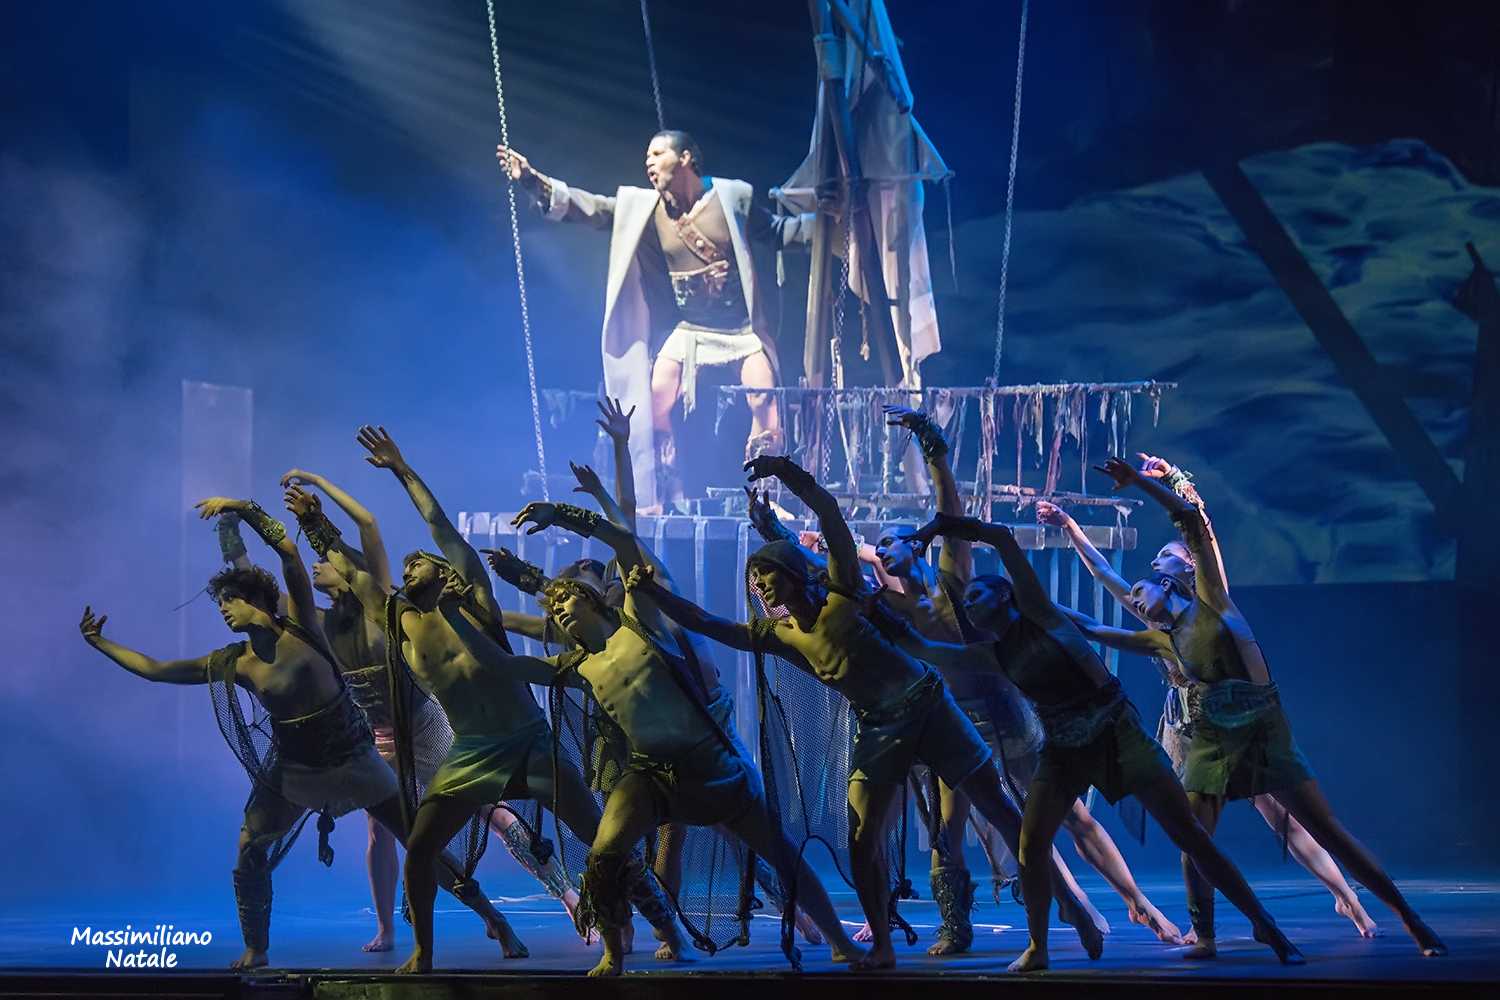 “Fatti di Musica 2021”: al Palacalafiore con il colossal “La Divina Commedia Opera Musical”